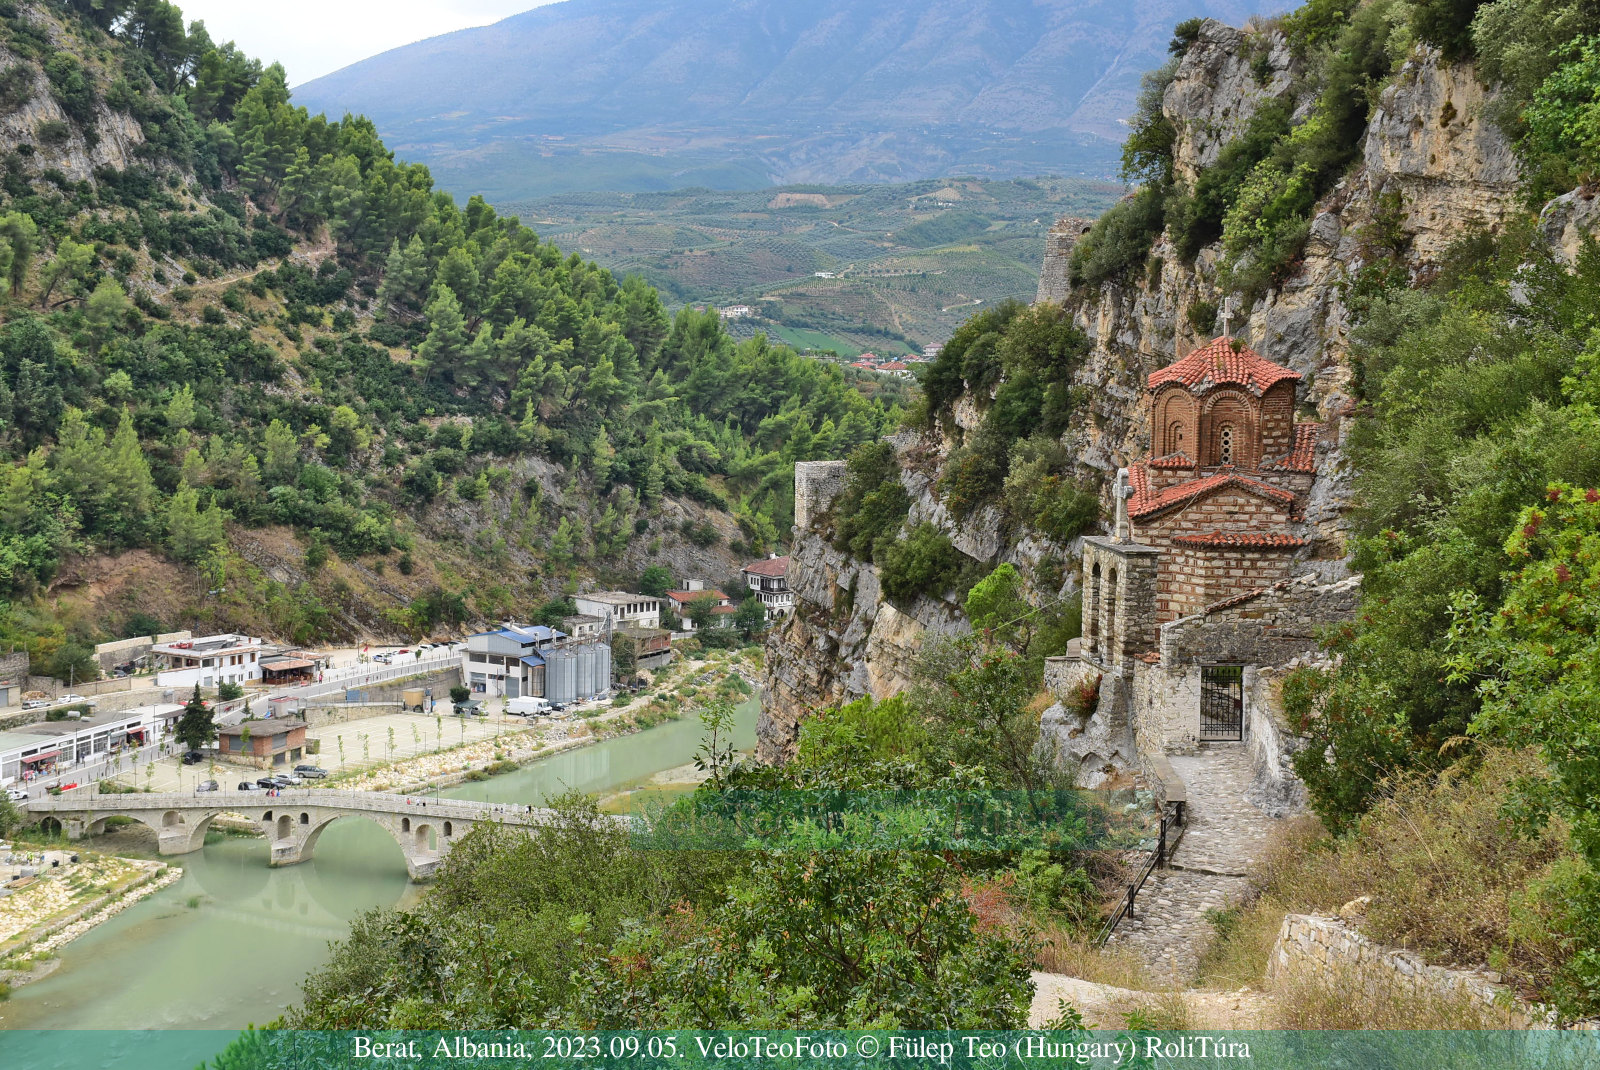 Gorica híd, Osum folyó, Szent Mihály templom, Berat, az ezerablakos város, Albánia.